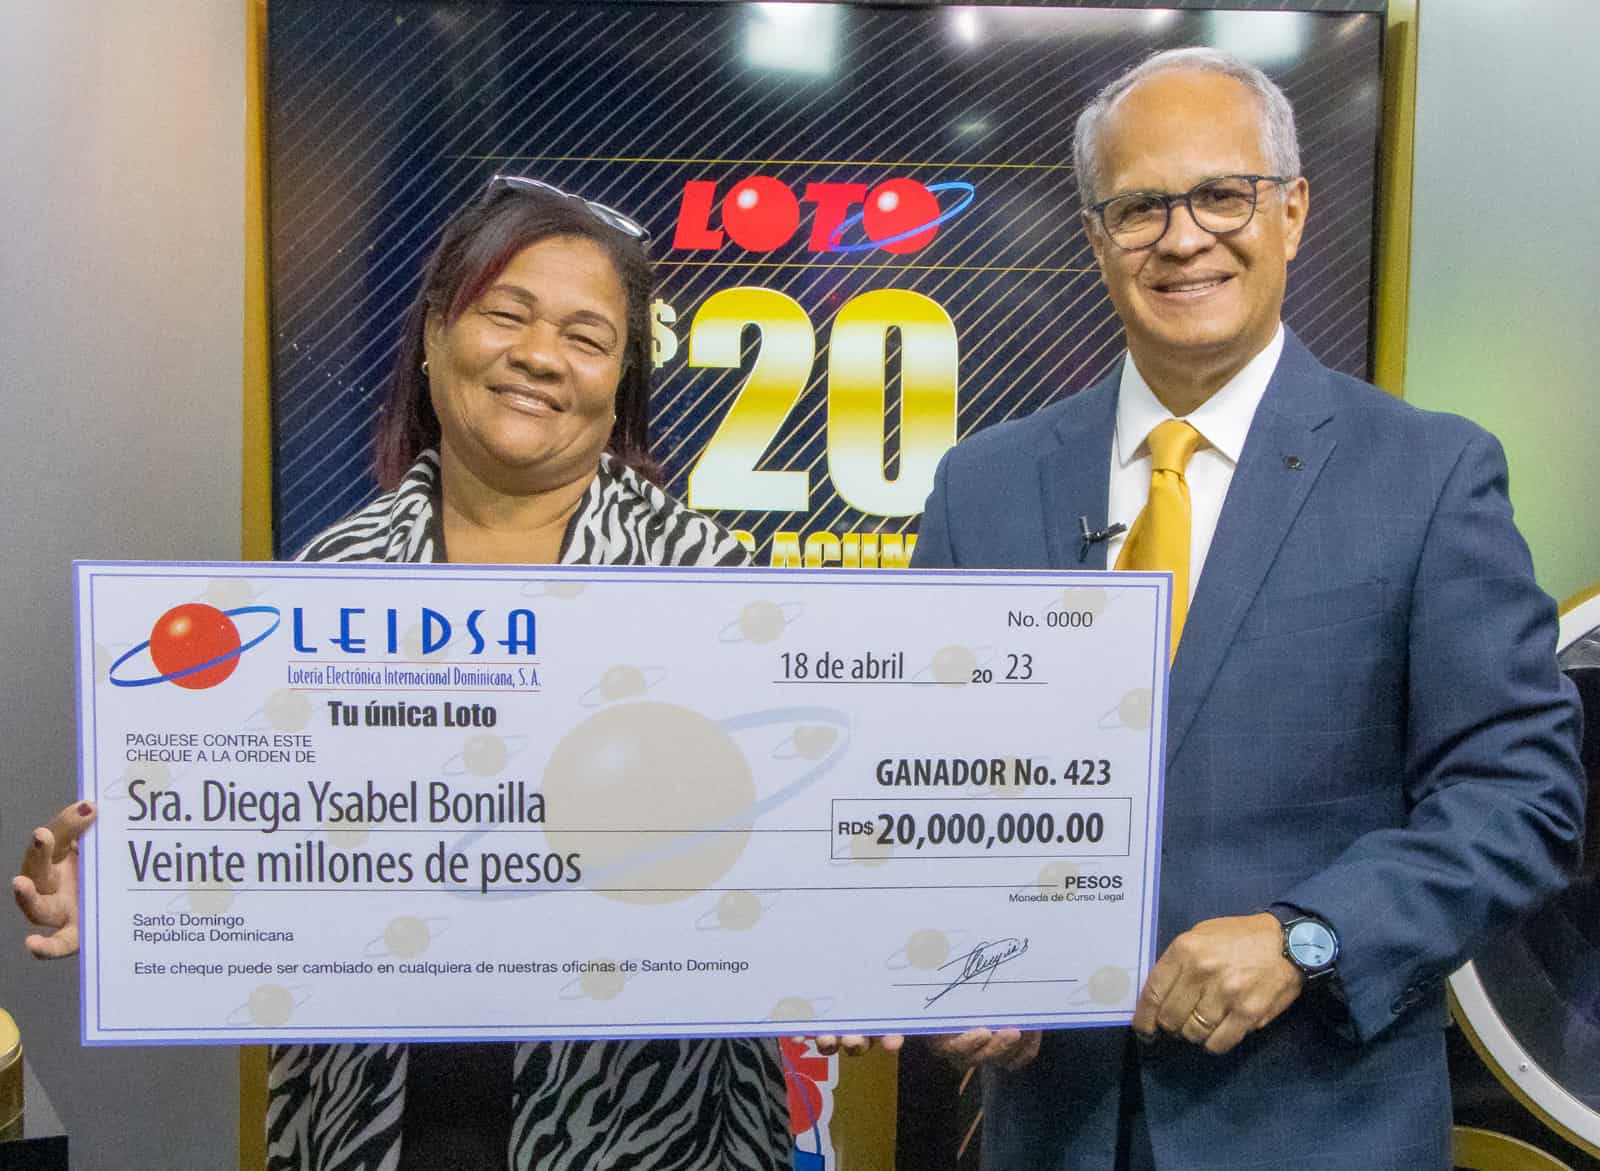 Estilista gana 20 millones de pesos en Leidsa